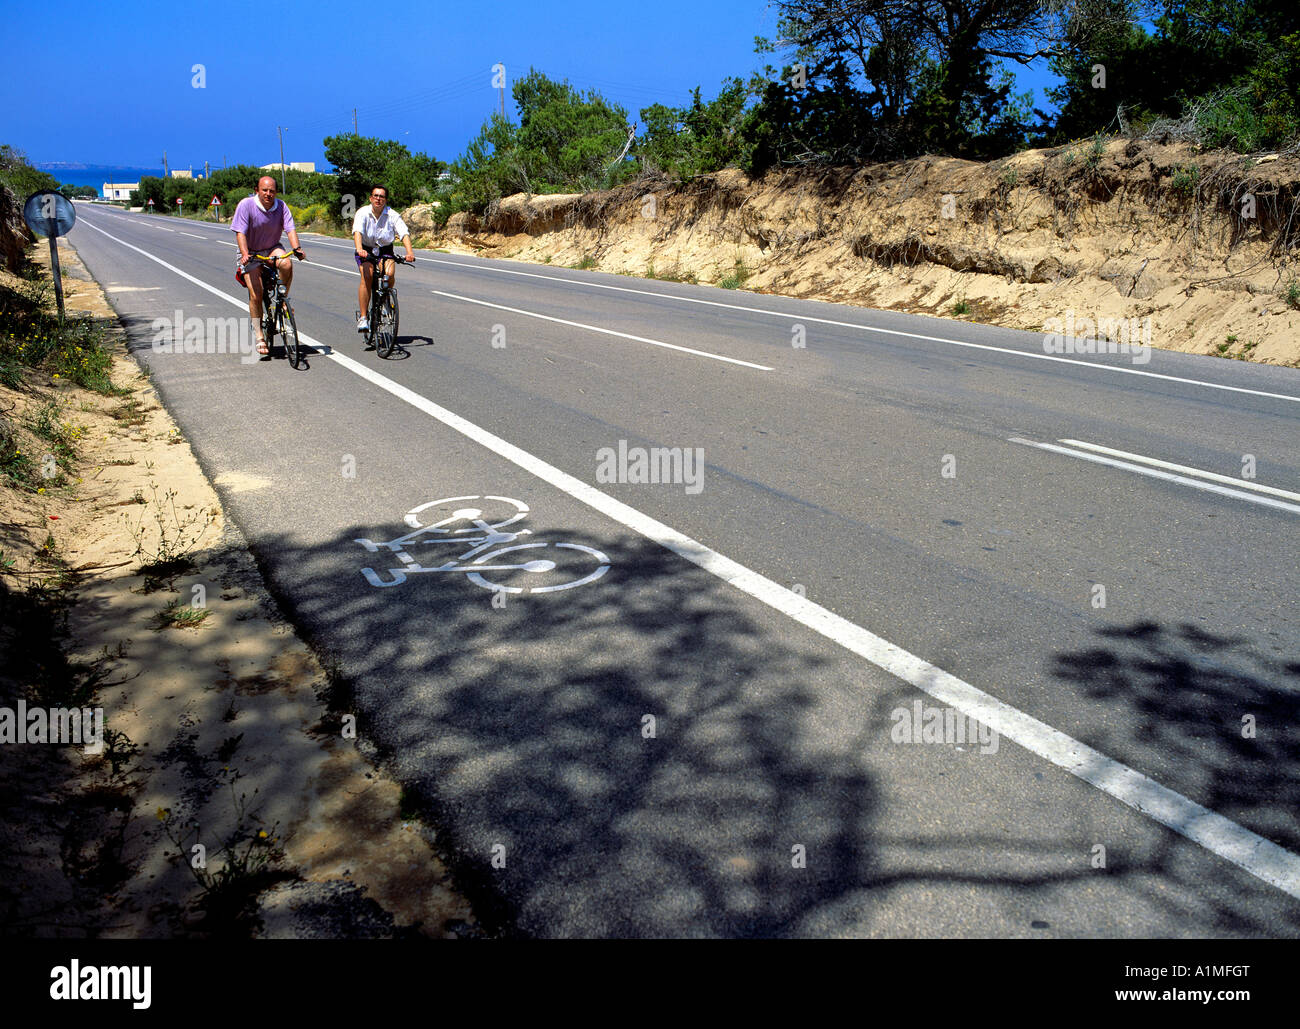 Tour de croisière sur les vélos piste cyclable sur route de campagne île de Formentera Baléares Espagne Banque D'Images